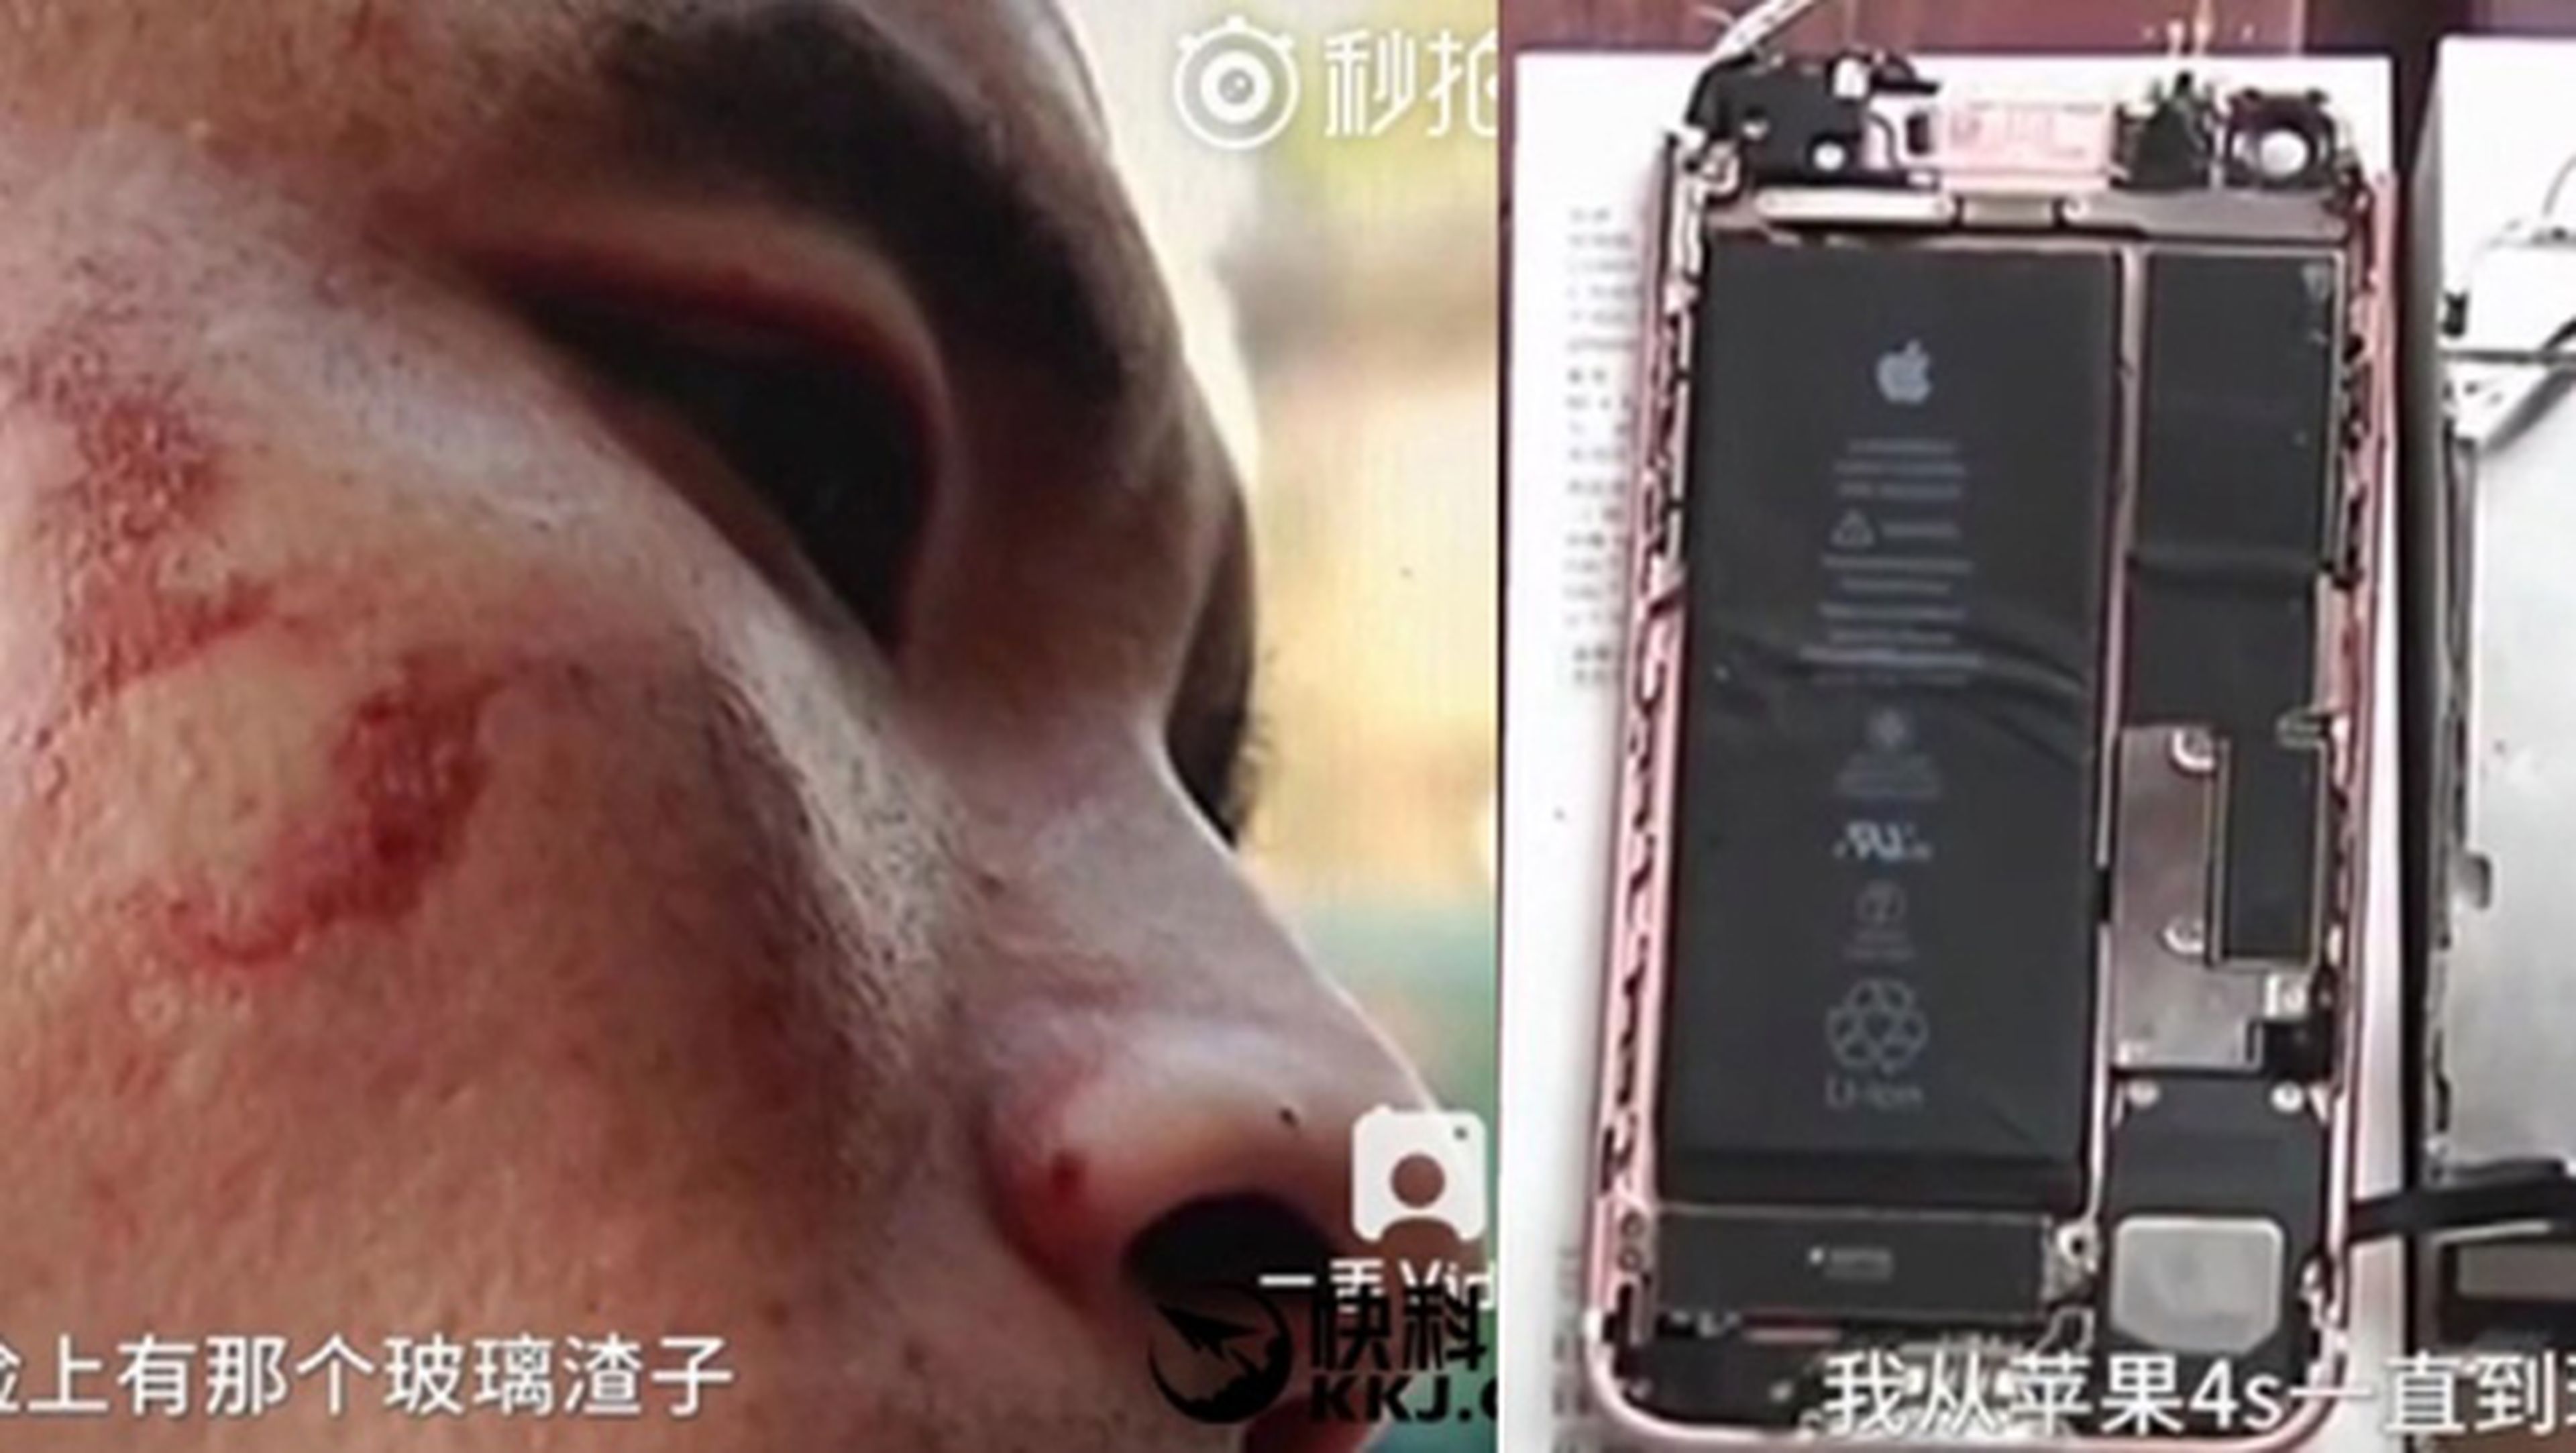 Un iPhone 7 le explota en la cara mientras grababa un vídeo